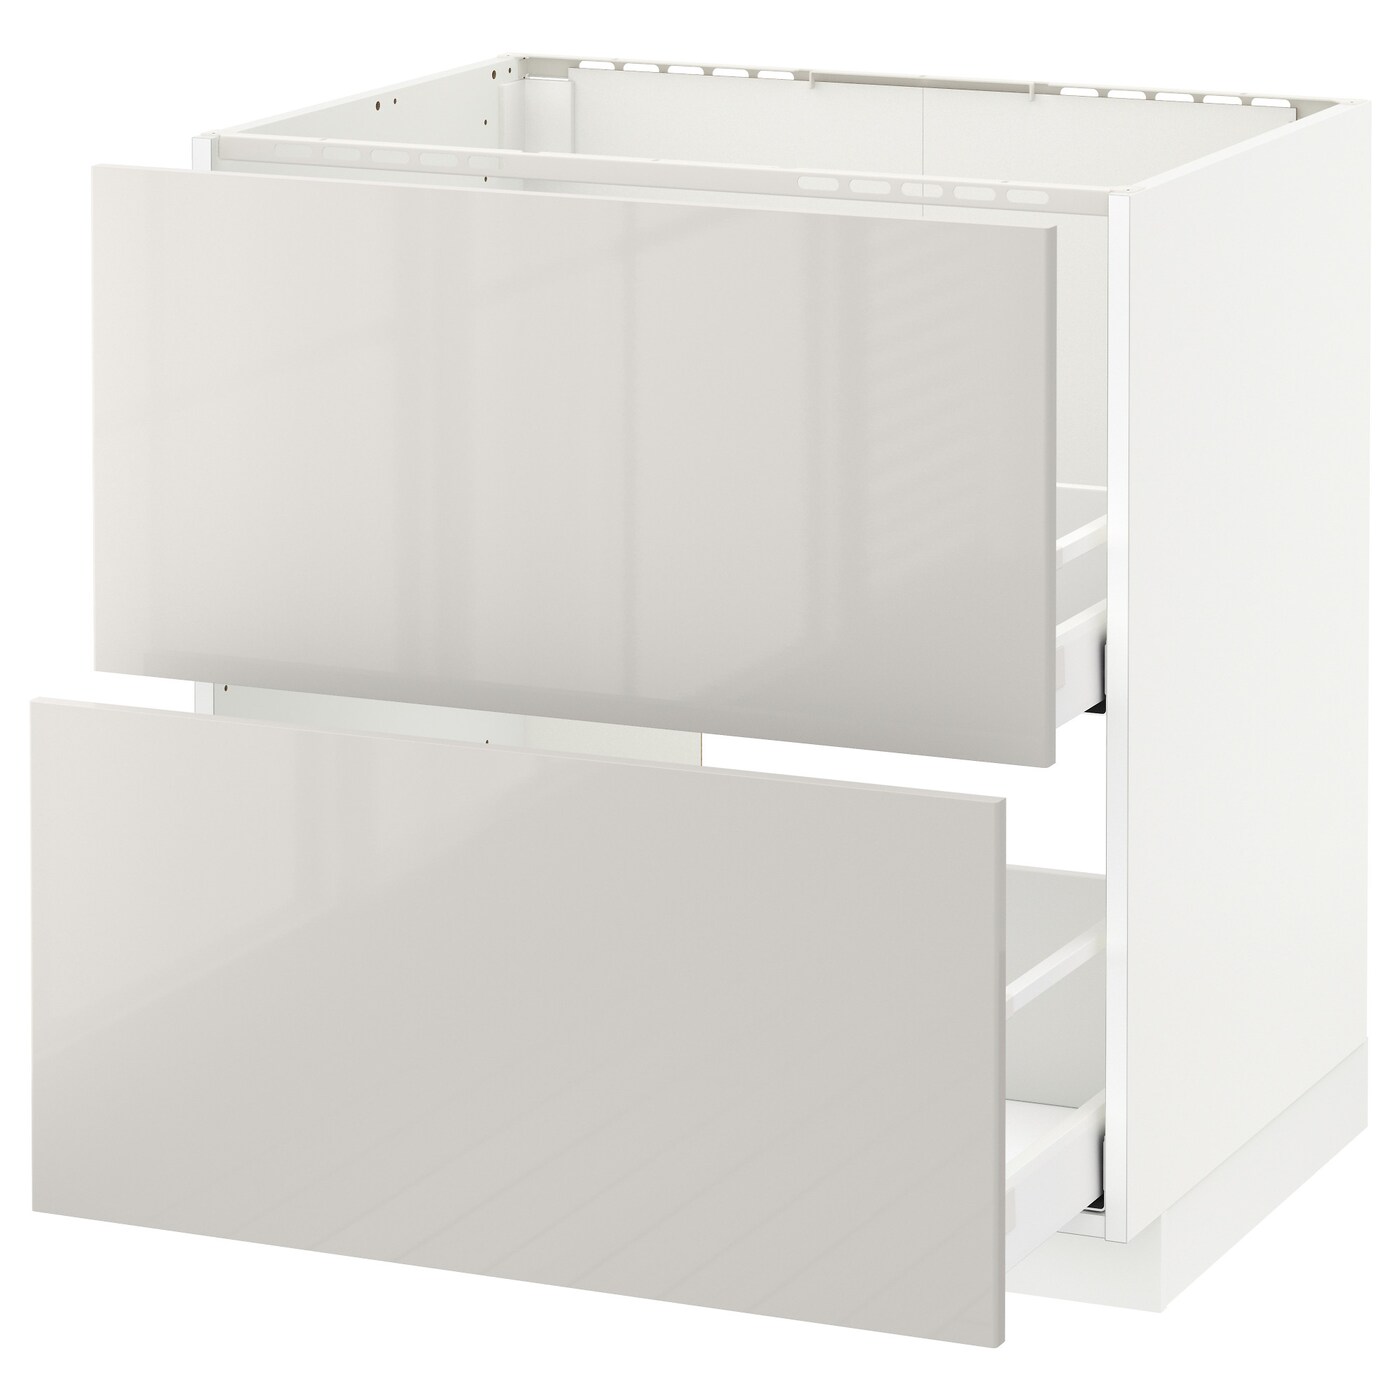 Напольный шкаф - METOD / MAXIMERA IKEA/ МЕТОД/ МАКСИМЕРА ИКЕА,  80х60 см, белый